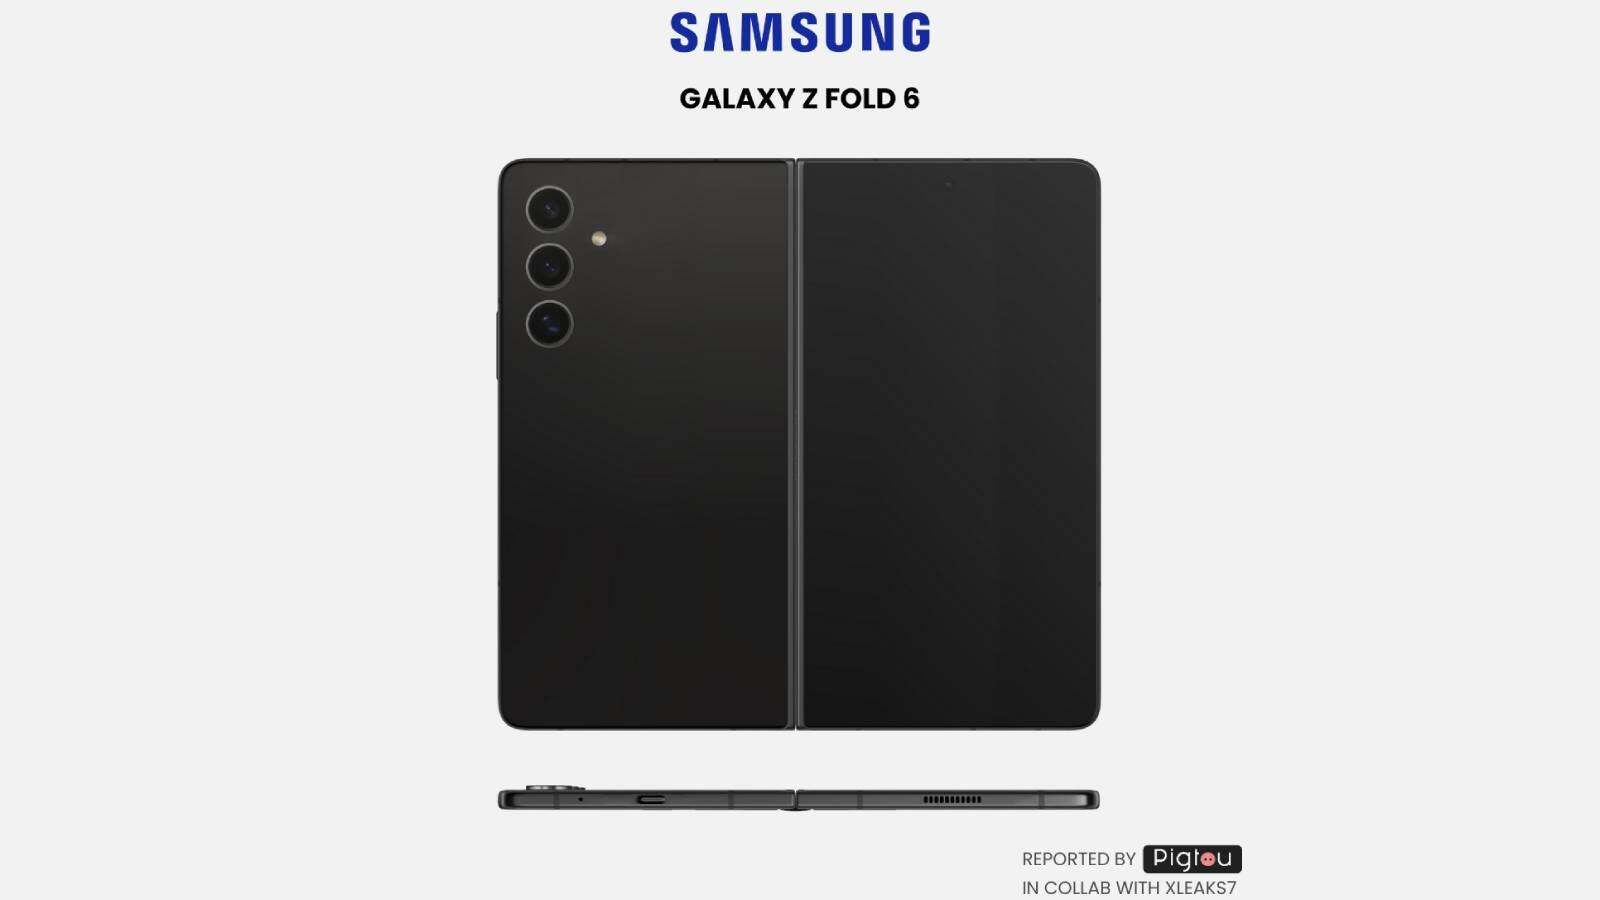 Ein Bild aus einem Patent deutet darauf hin, dass Samsung daran interessiert ist, das Fold breiter zu machen – Wird Samsung endlich ein faltbares Gerät herstellen, das Sie auch gefaltet verwenden können?